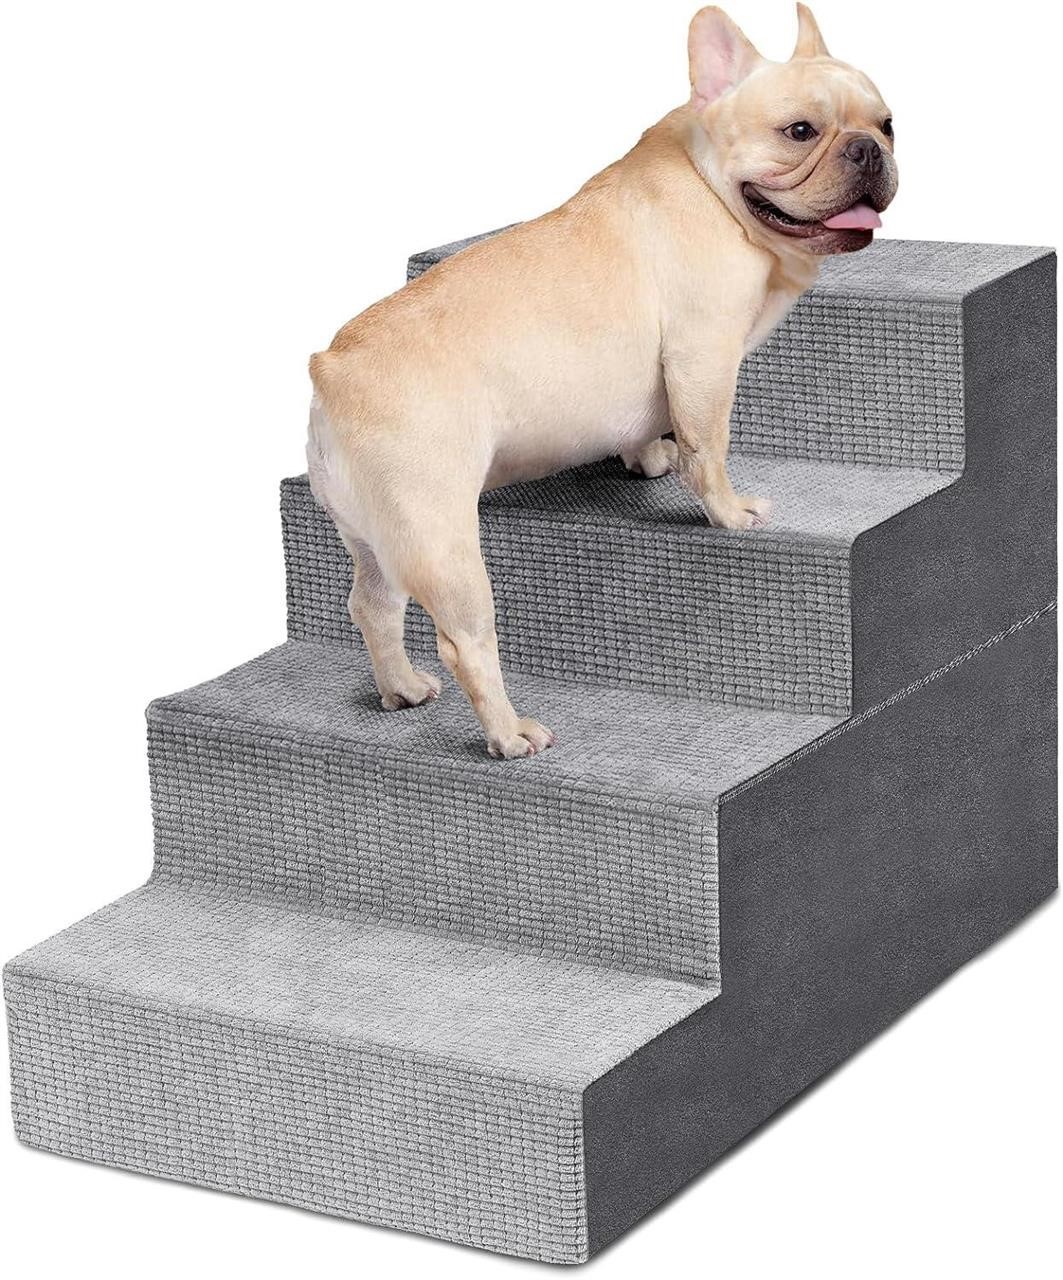 SEALED-Heeyoo 4-Step Dog Stairs